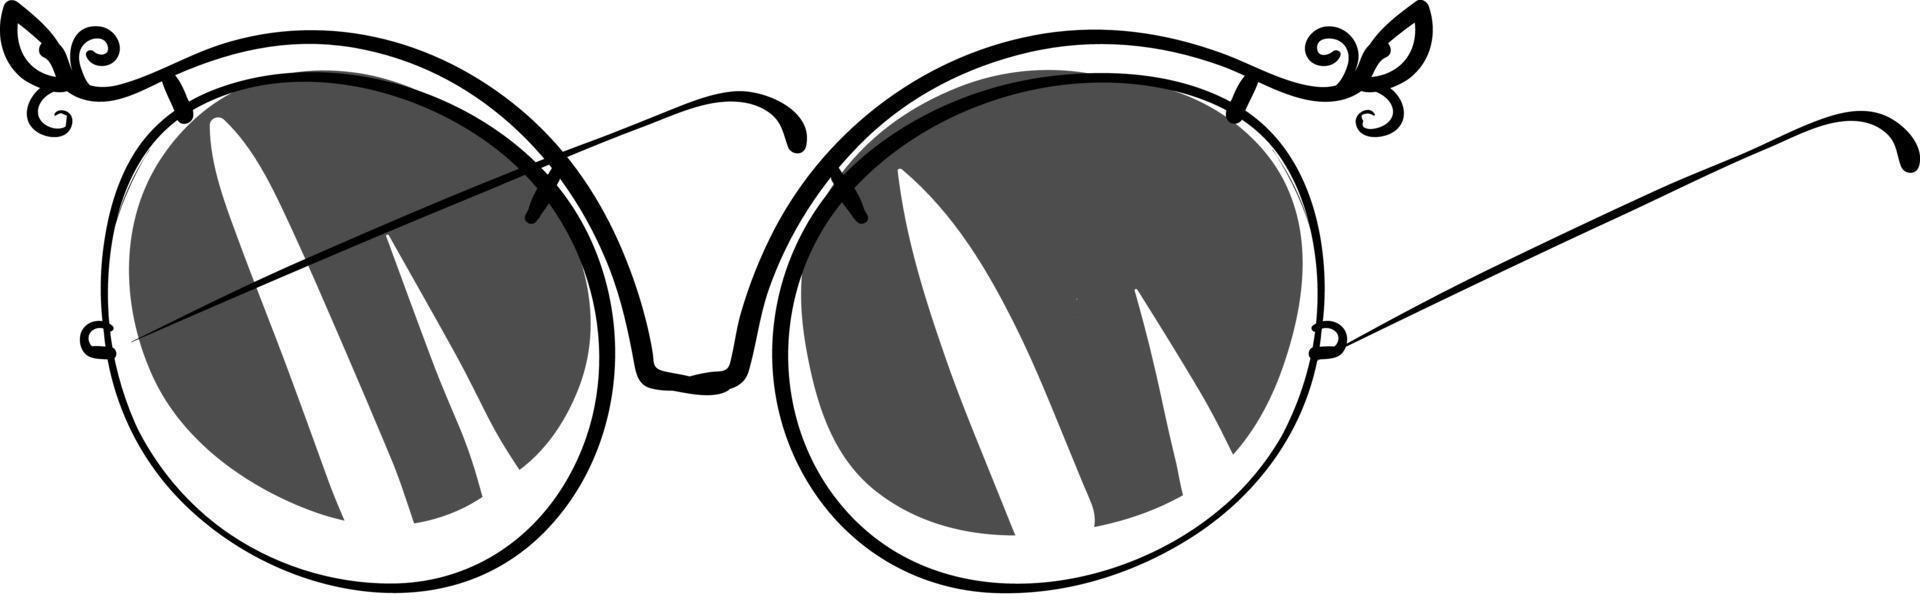 lunettes noires, illustration, vecteur noir sur fond blanc.